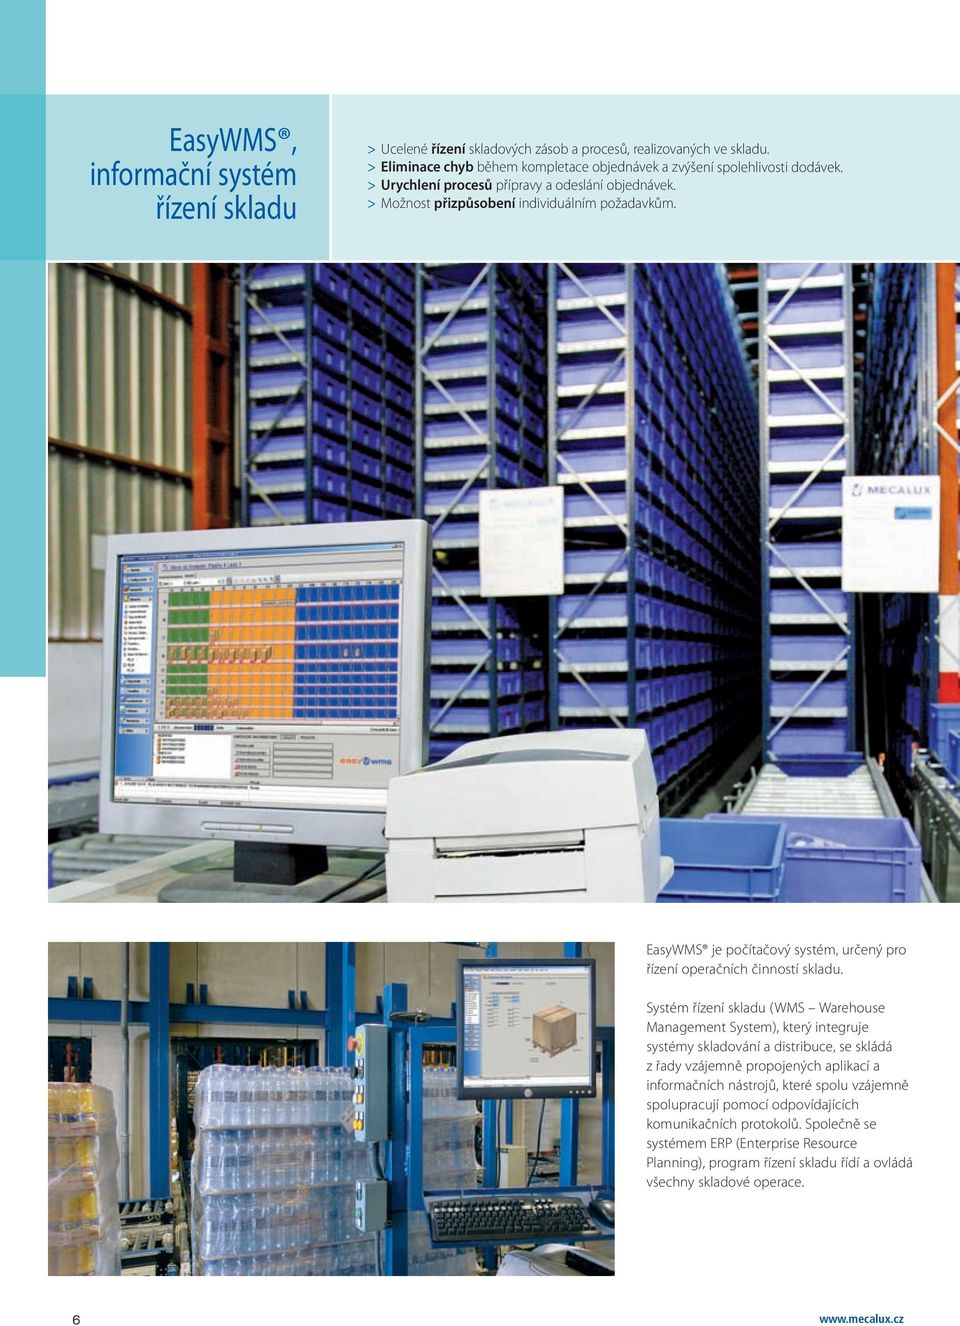 Systém řízení skladu (WMS Warehouse Management System), který integruje systémy skladování a distribuce, se skládá z řady vzájemně propojených aplikací a informačních nástrojů, které spolu